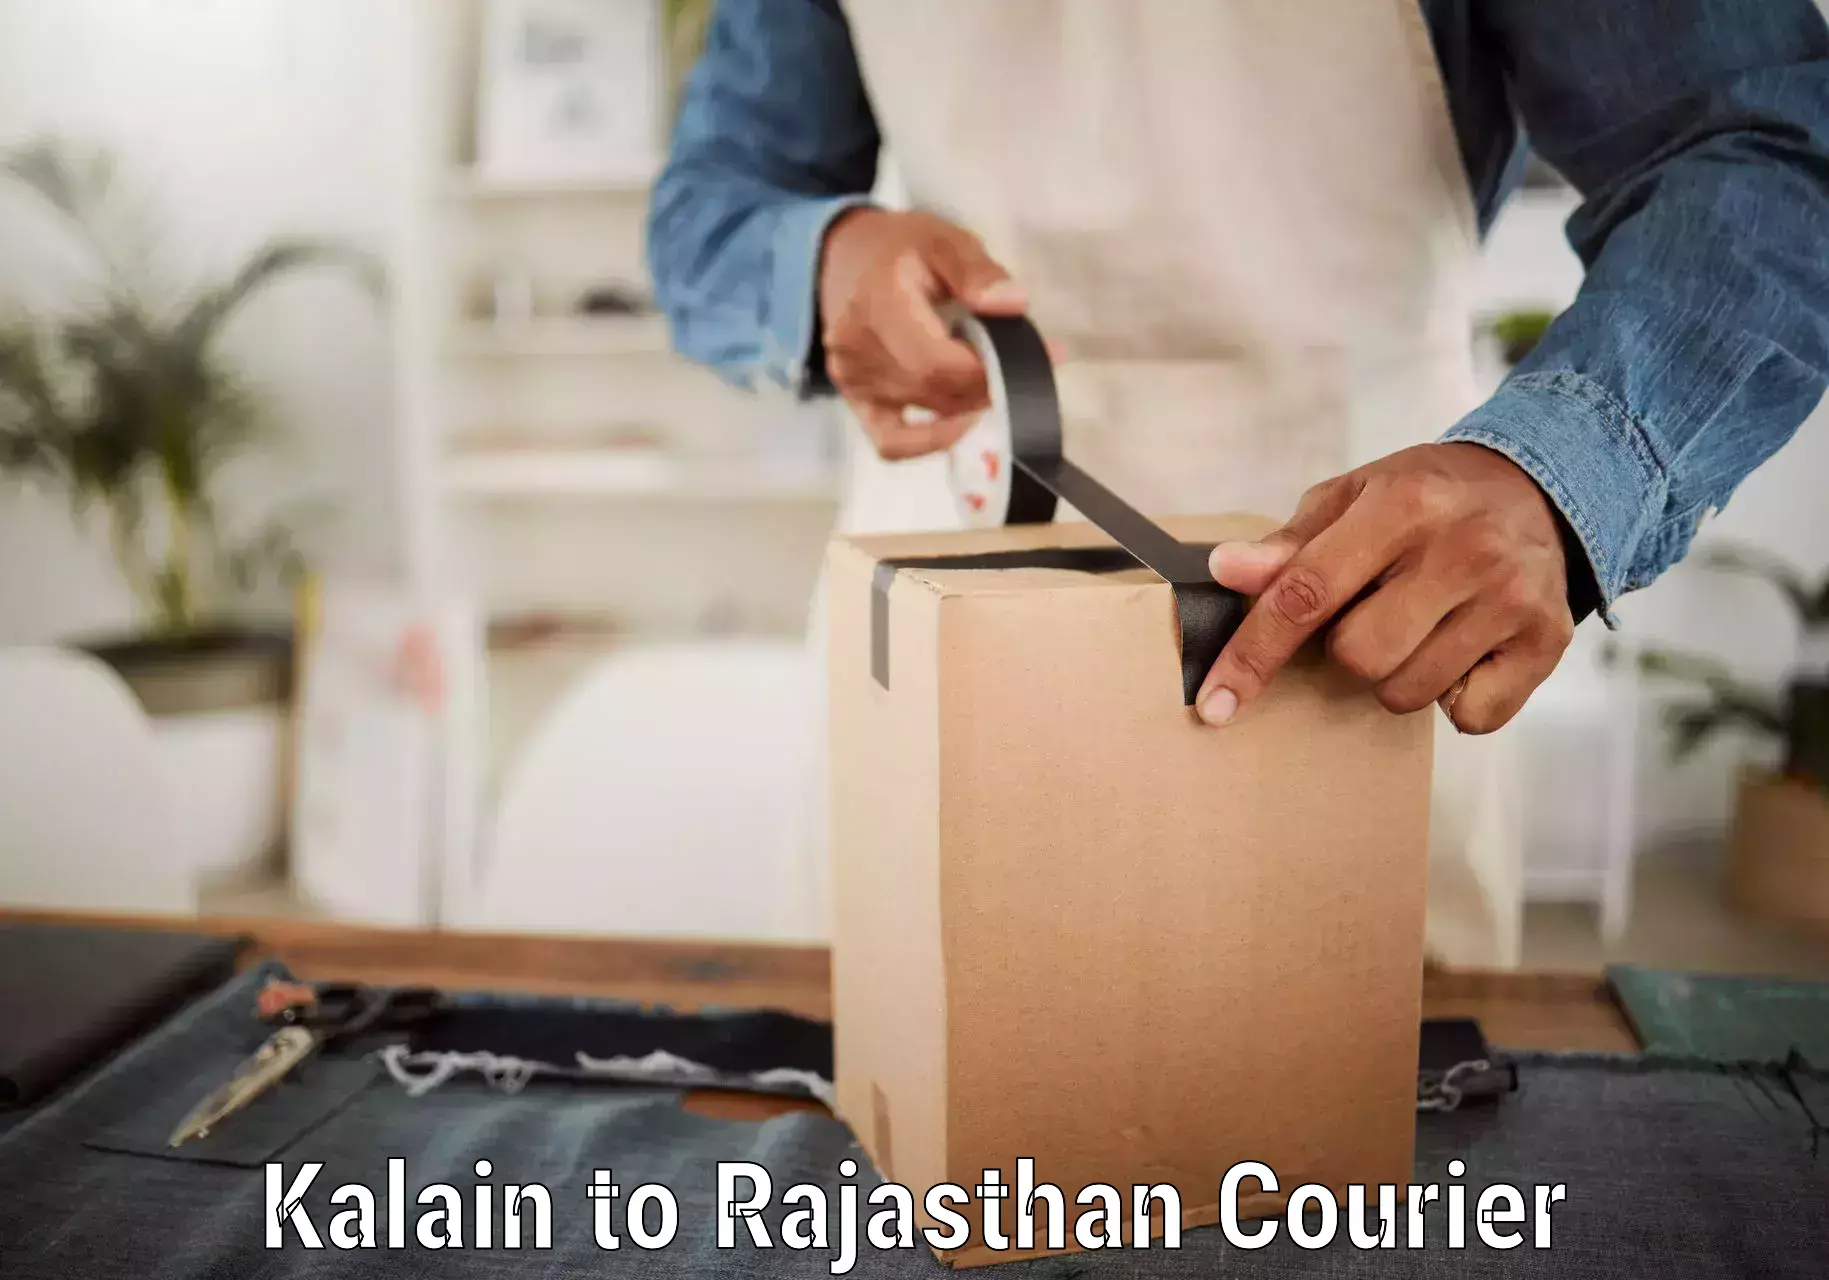 Reliable delivery network Kalain to Jhunjhunu